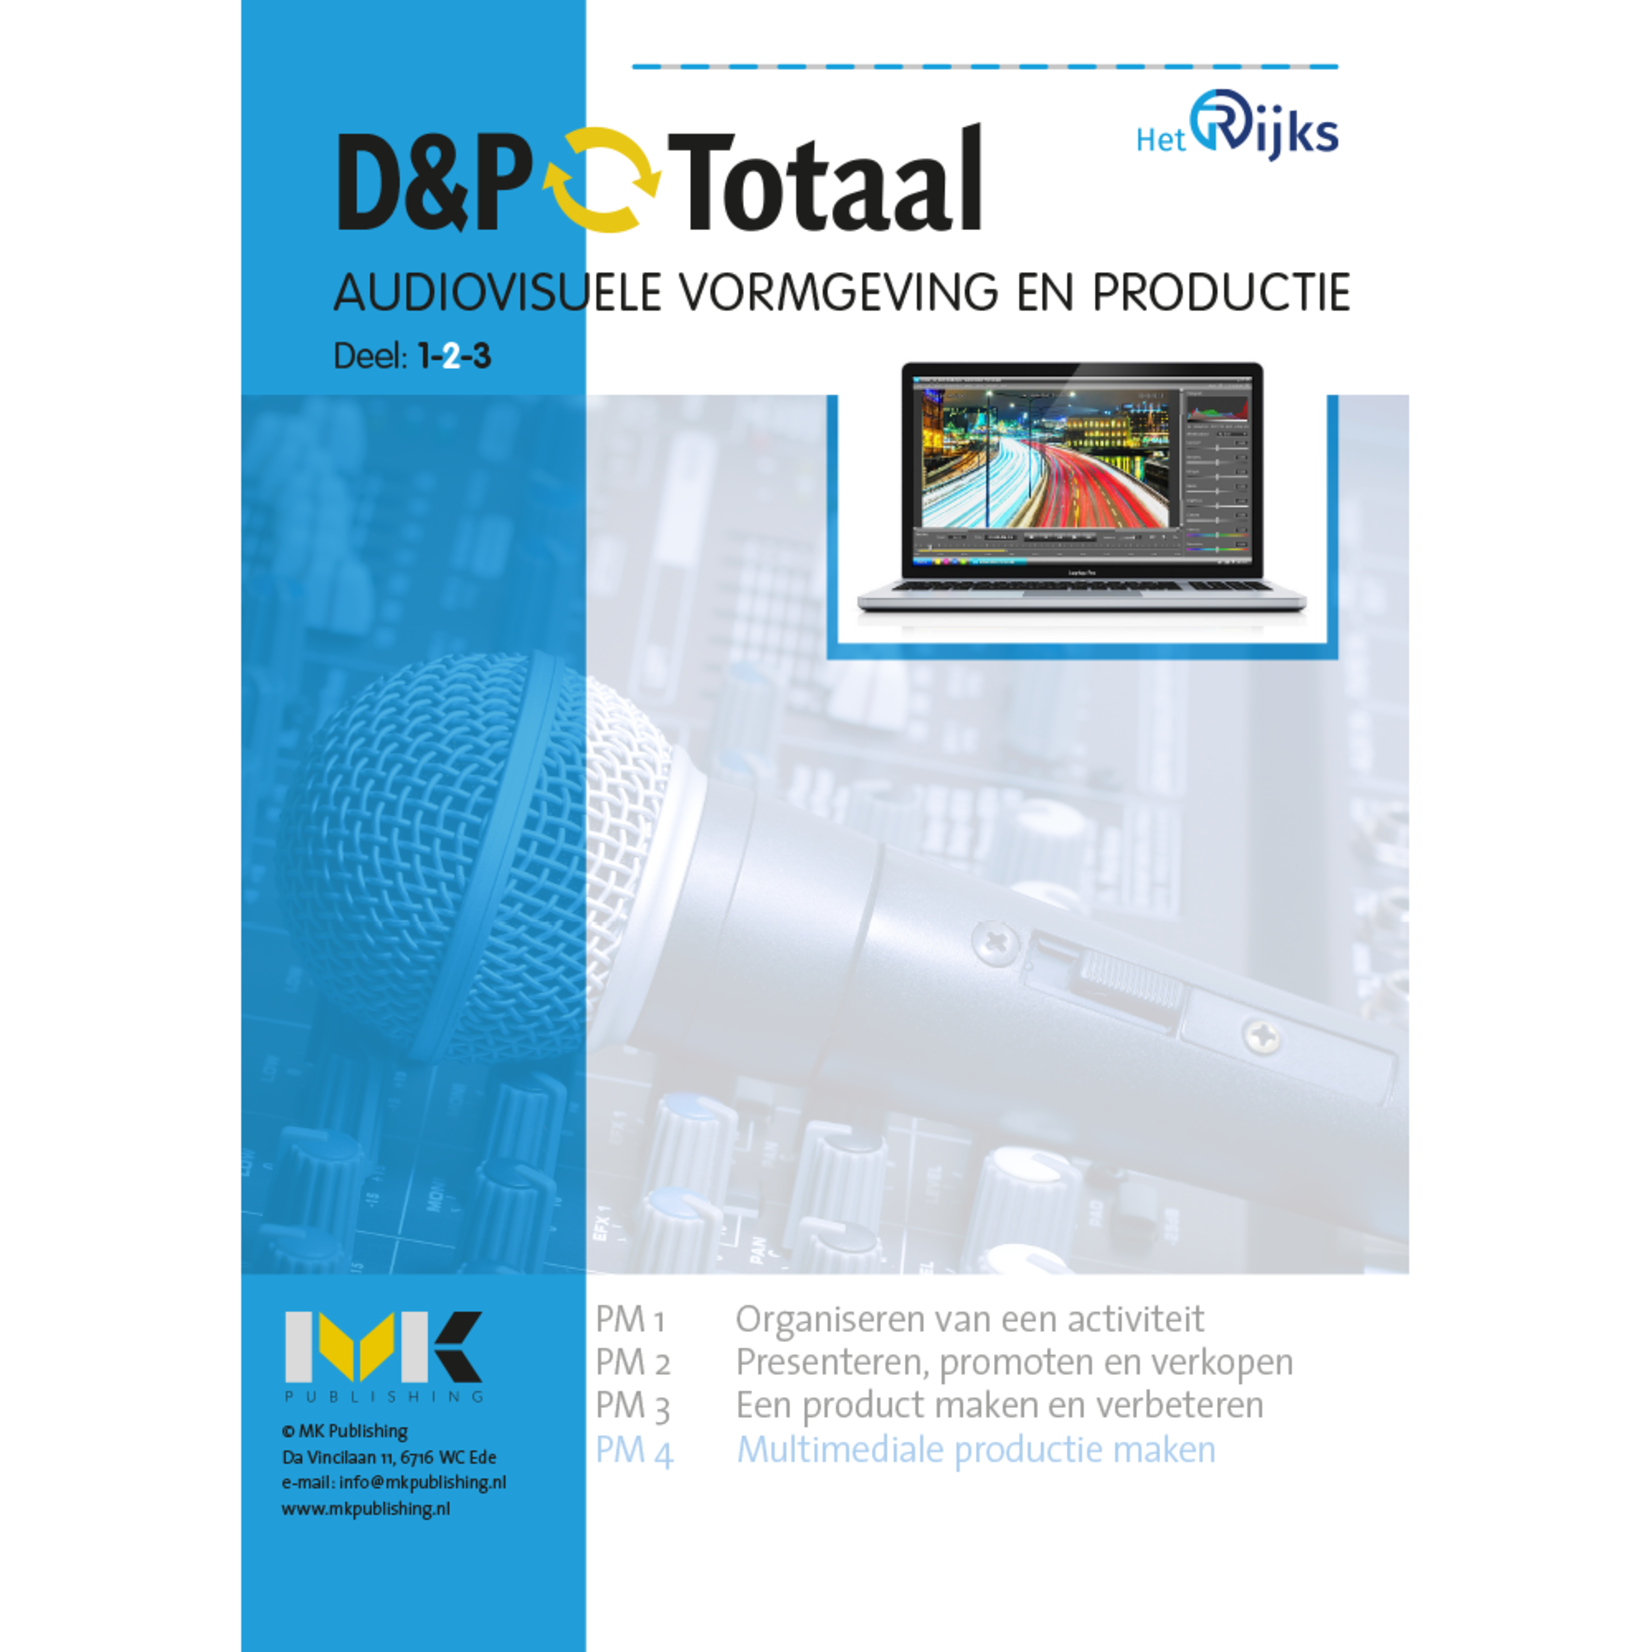 D&P-Totaal - MVI Audiovisuele vormgeving en productie (PM4/1501)